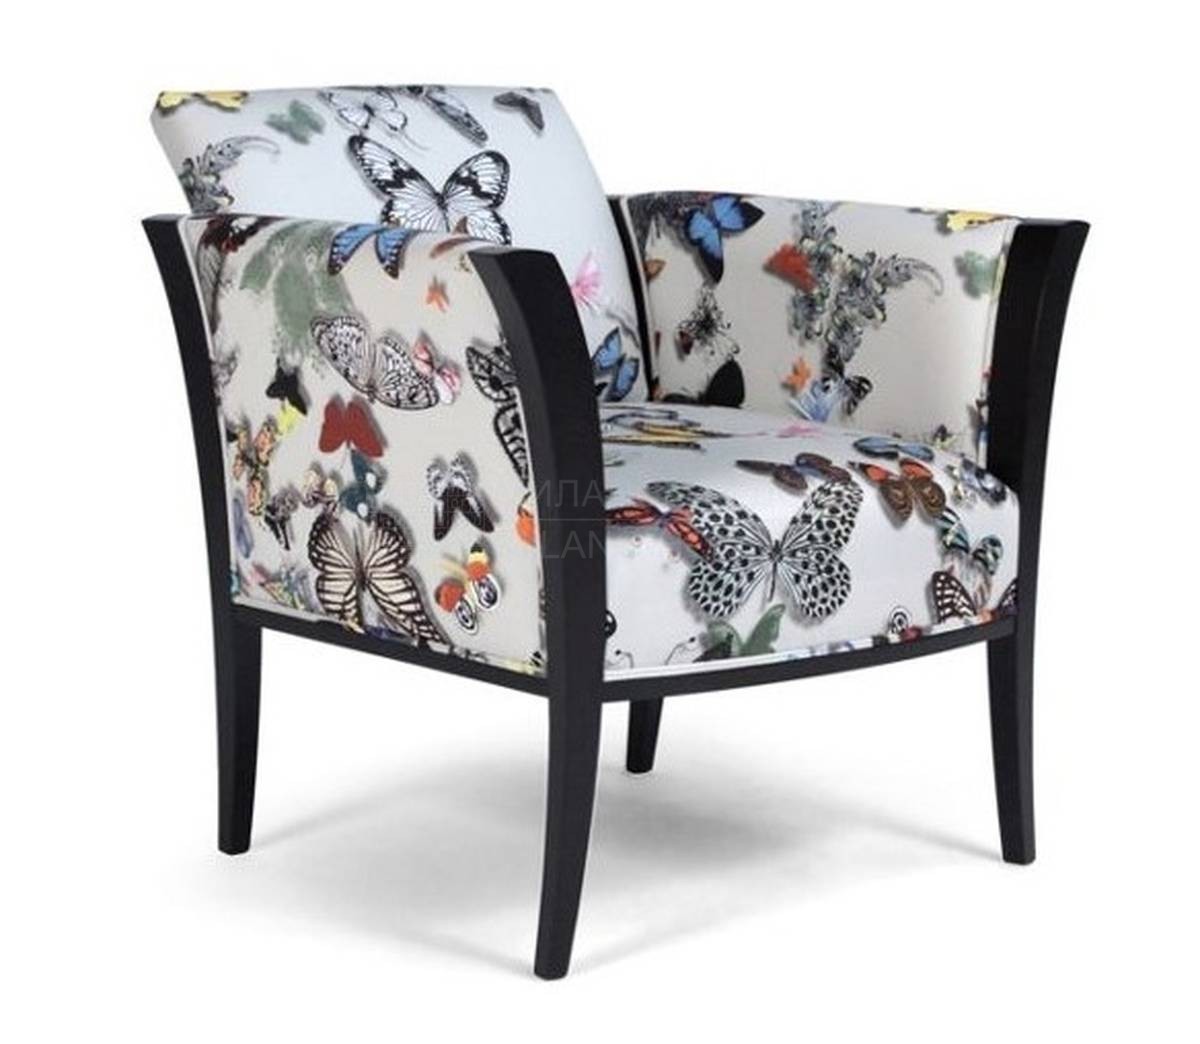 Кресло Apostrophe armchair из Франции фабрики ROCHE BOBOIS